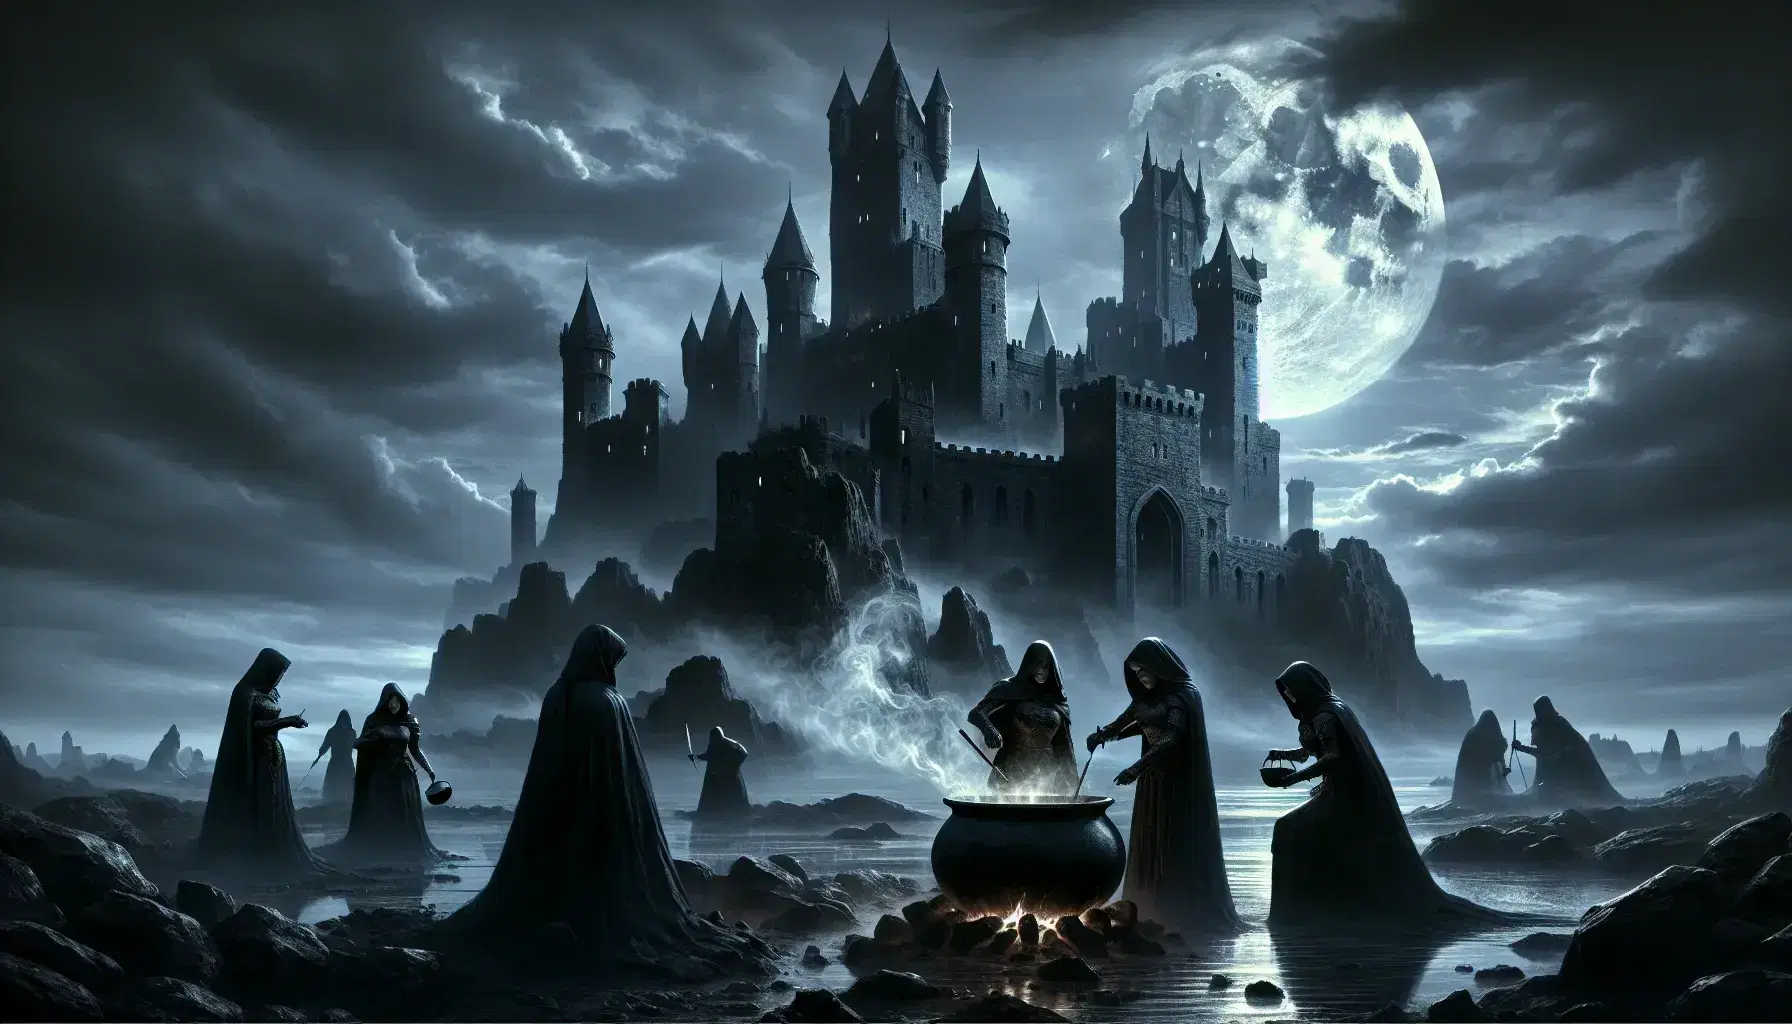 Castello medievale in notte nebbiosa con luna piena, tre streghe al calderone e cavaliere pensieroso in armatura. Atmosfera misteriosa.